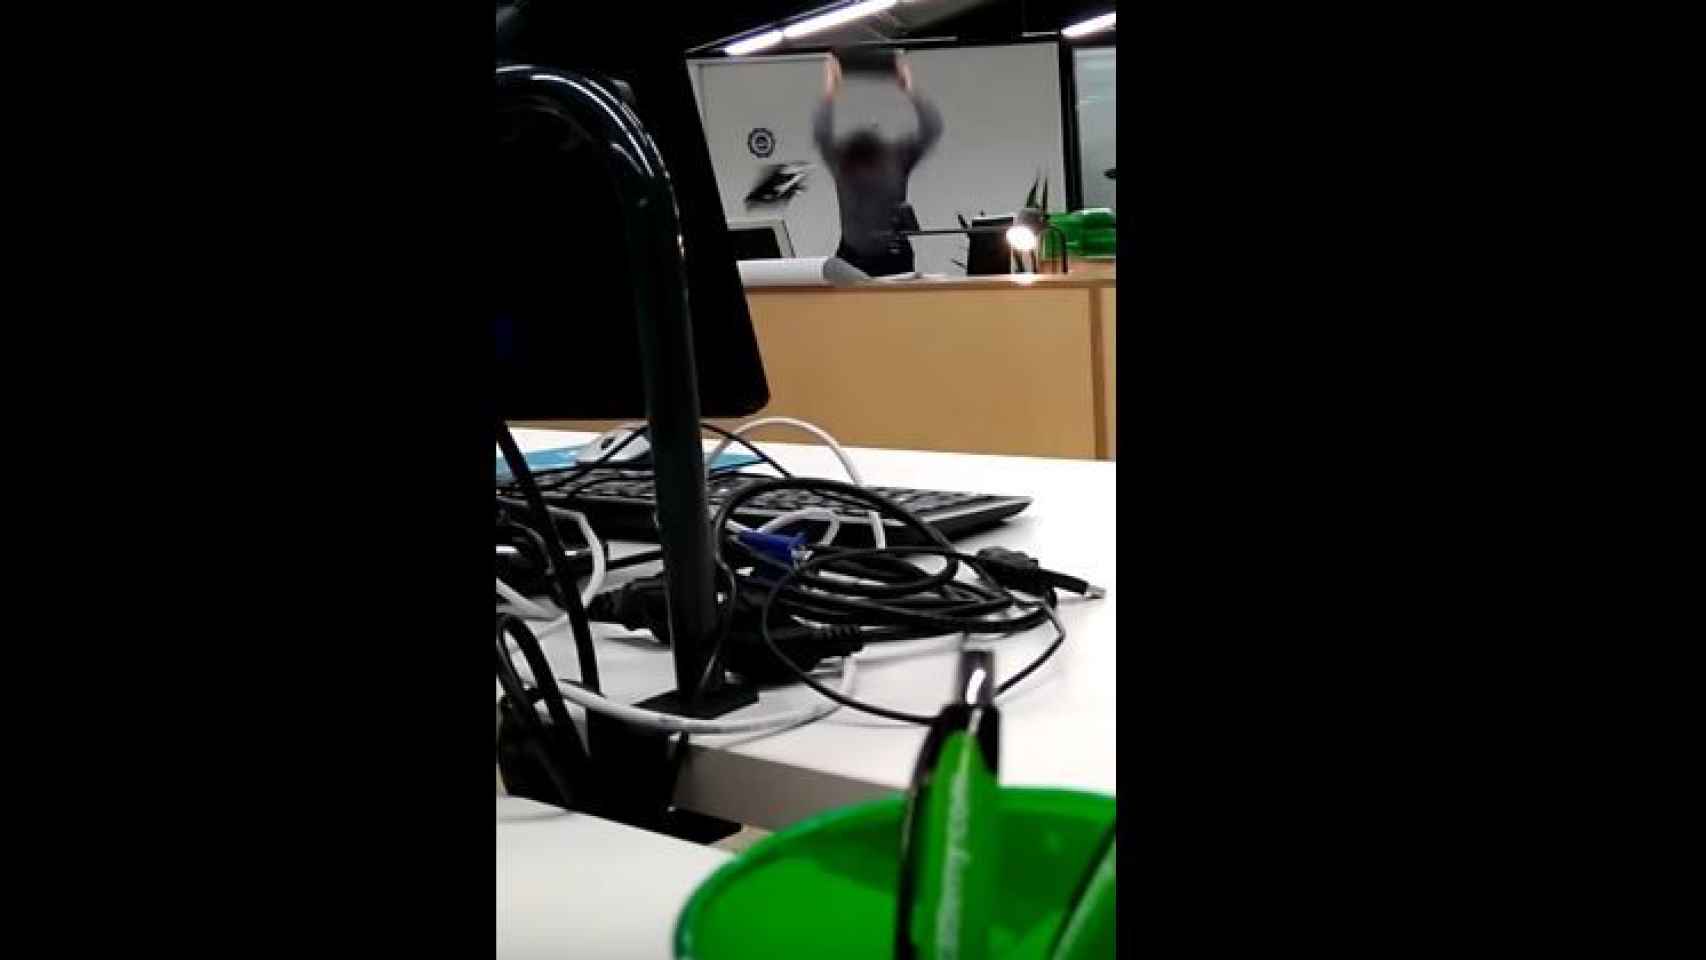 Un profesor rompe un ordenador después de que su alumno le llamara subnormal